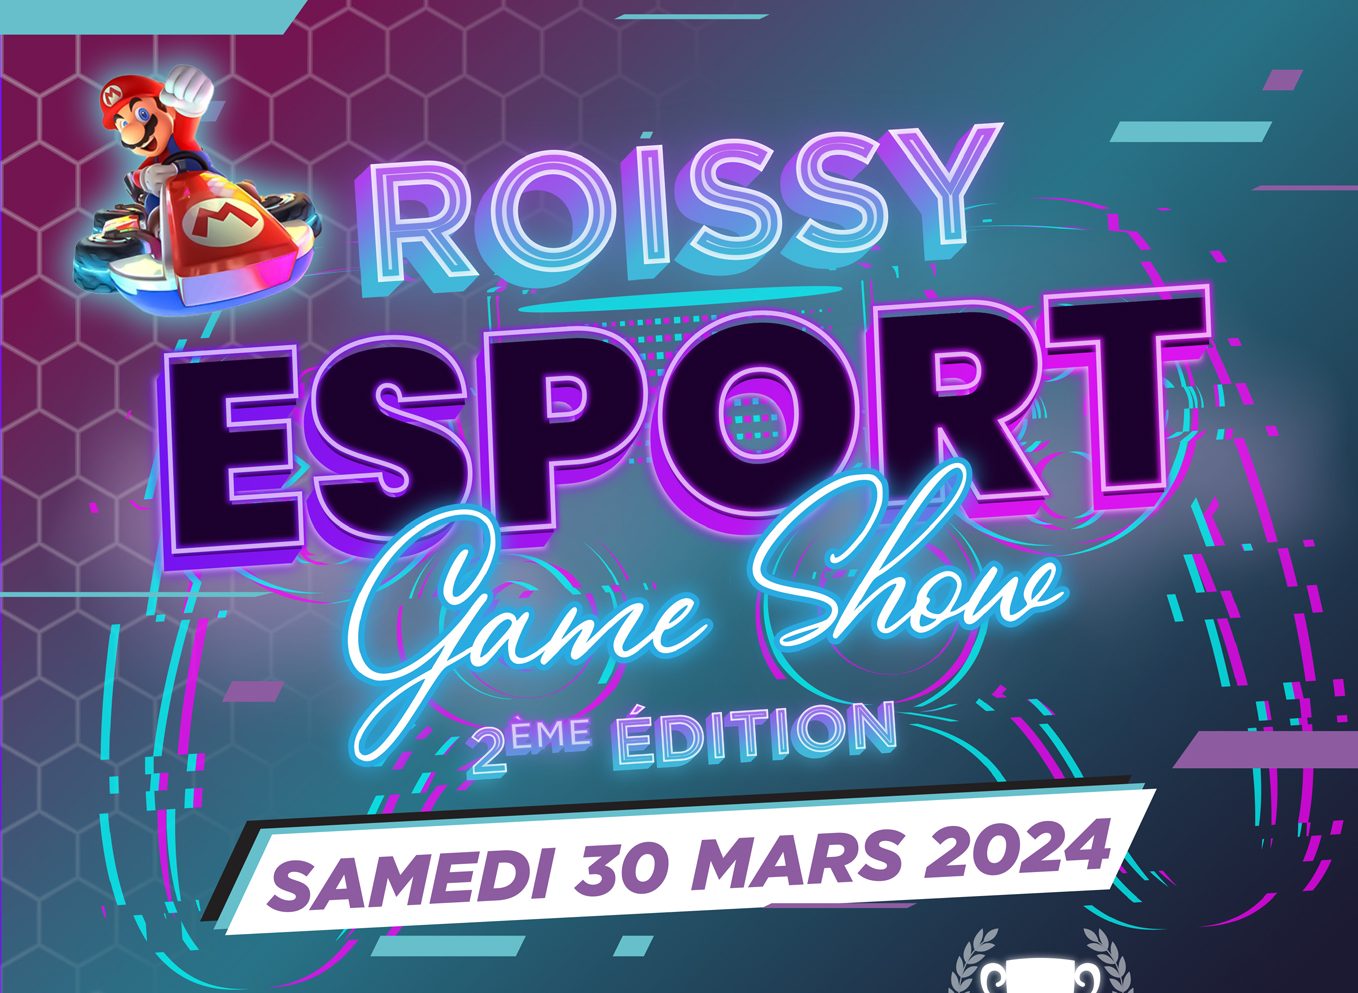 Die Roissy Esport Game Show kehrt am 30. März zurück!